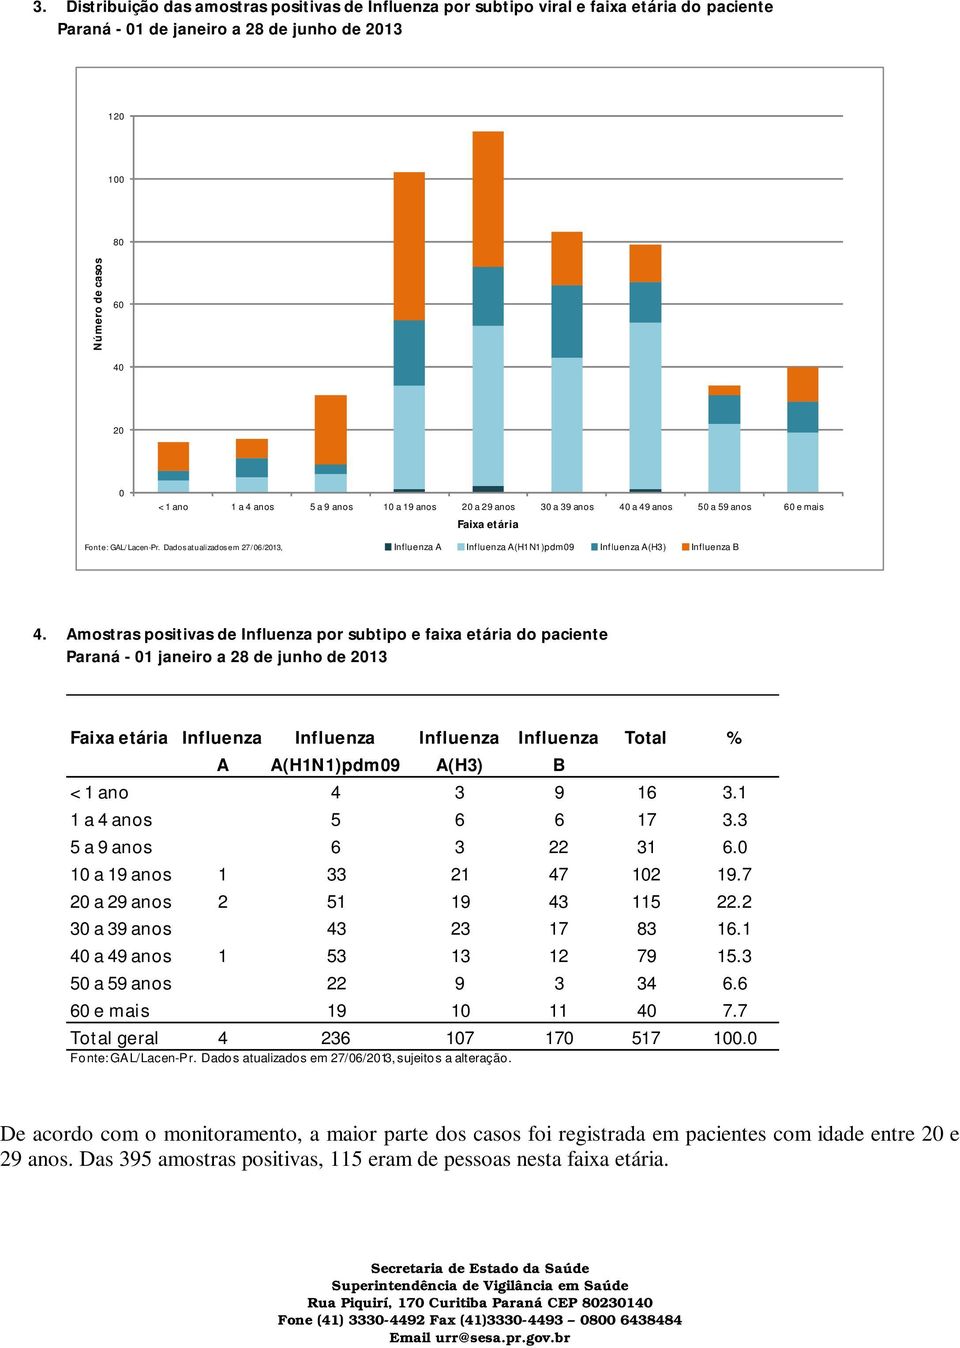 Amostras positivas de por subtipo e faixa etária do paciente Paraná - 01 janeiro a 28 de junho de 2013 Faixa etária Total % A A(H1N1)pdm09 A(H3) B < 1 ano 4 3 9 16 3.1 1 a 4 anos 5 6 6 17 3.